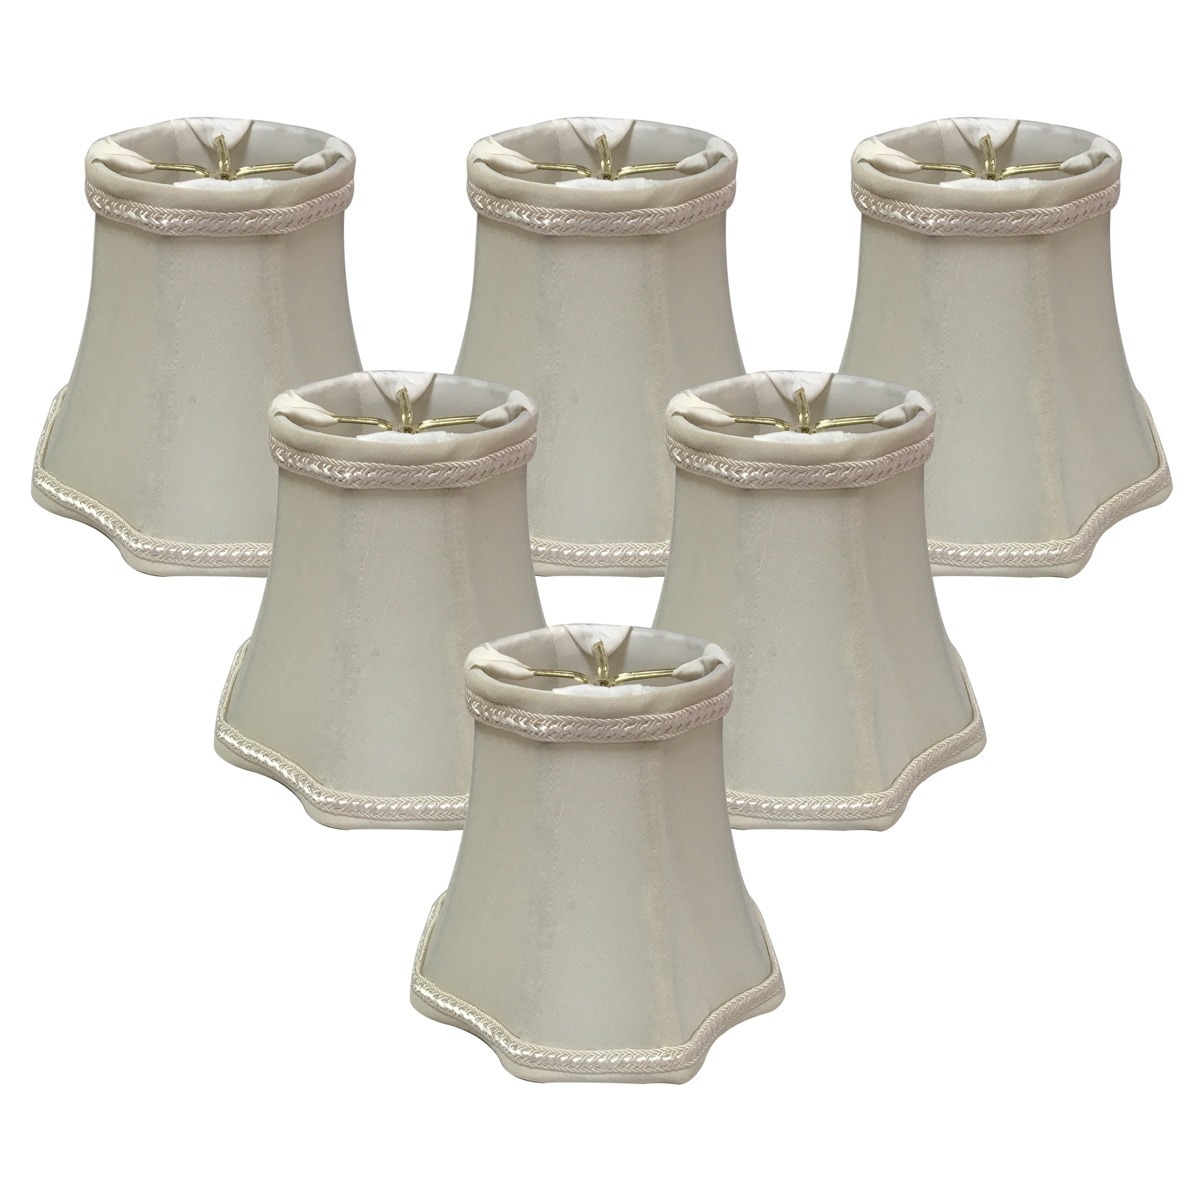 直営店に限定 Royal White Lamp Designs Royal Modified x Shade Bell Lamp Shade  Eggshell Drum 11 x 18 x Shade, 13.5